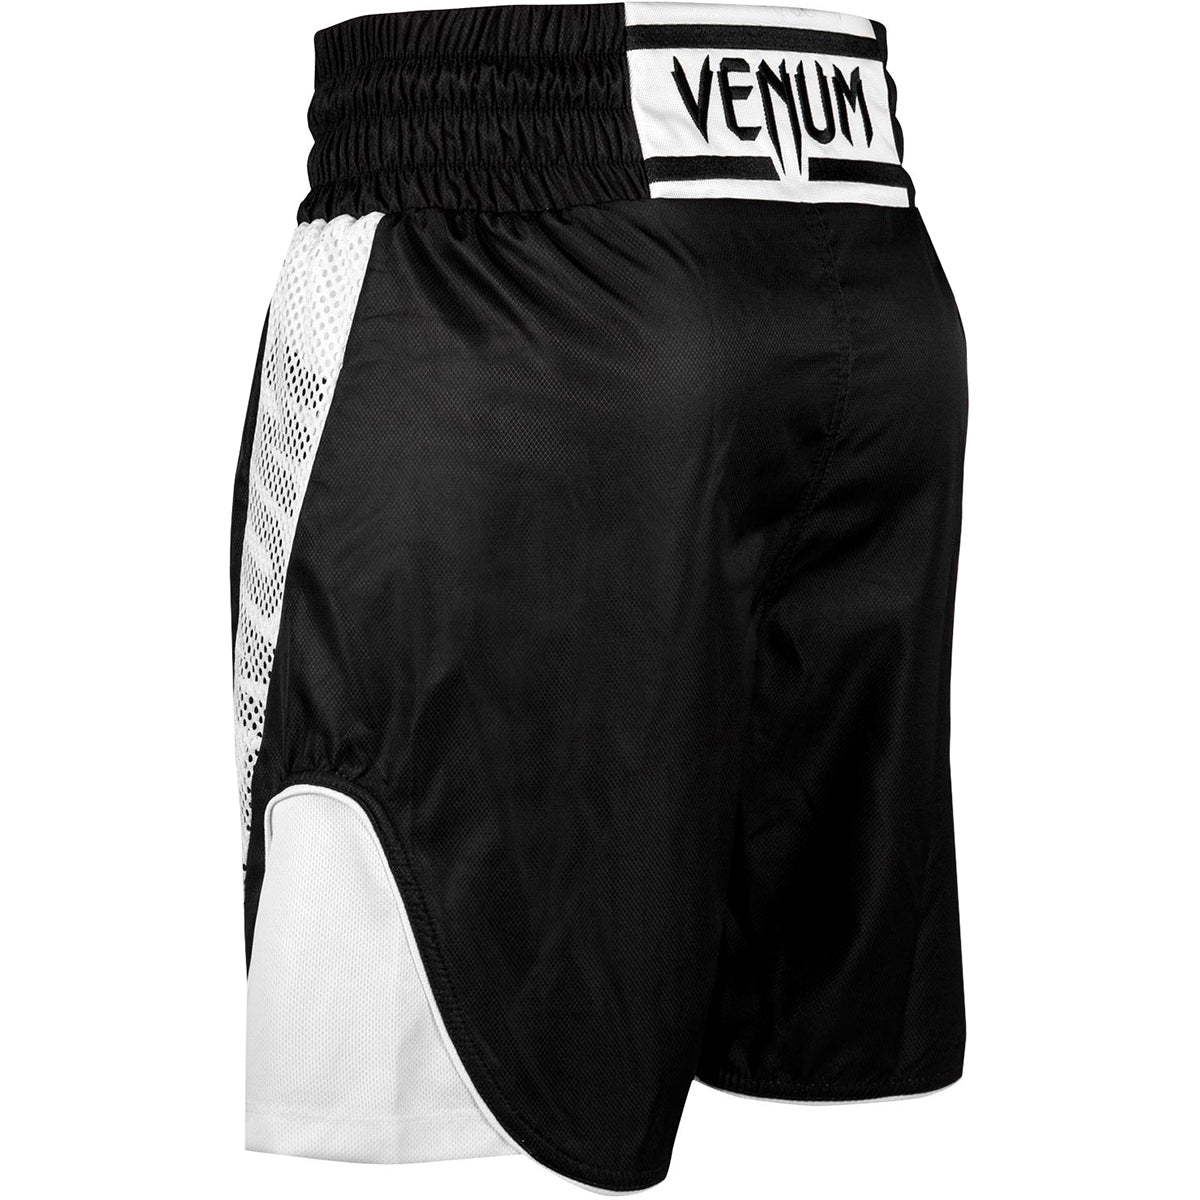 Venum Elite Boxing Shorts - Black/White Venum